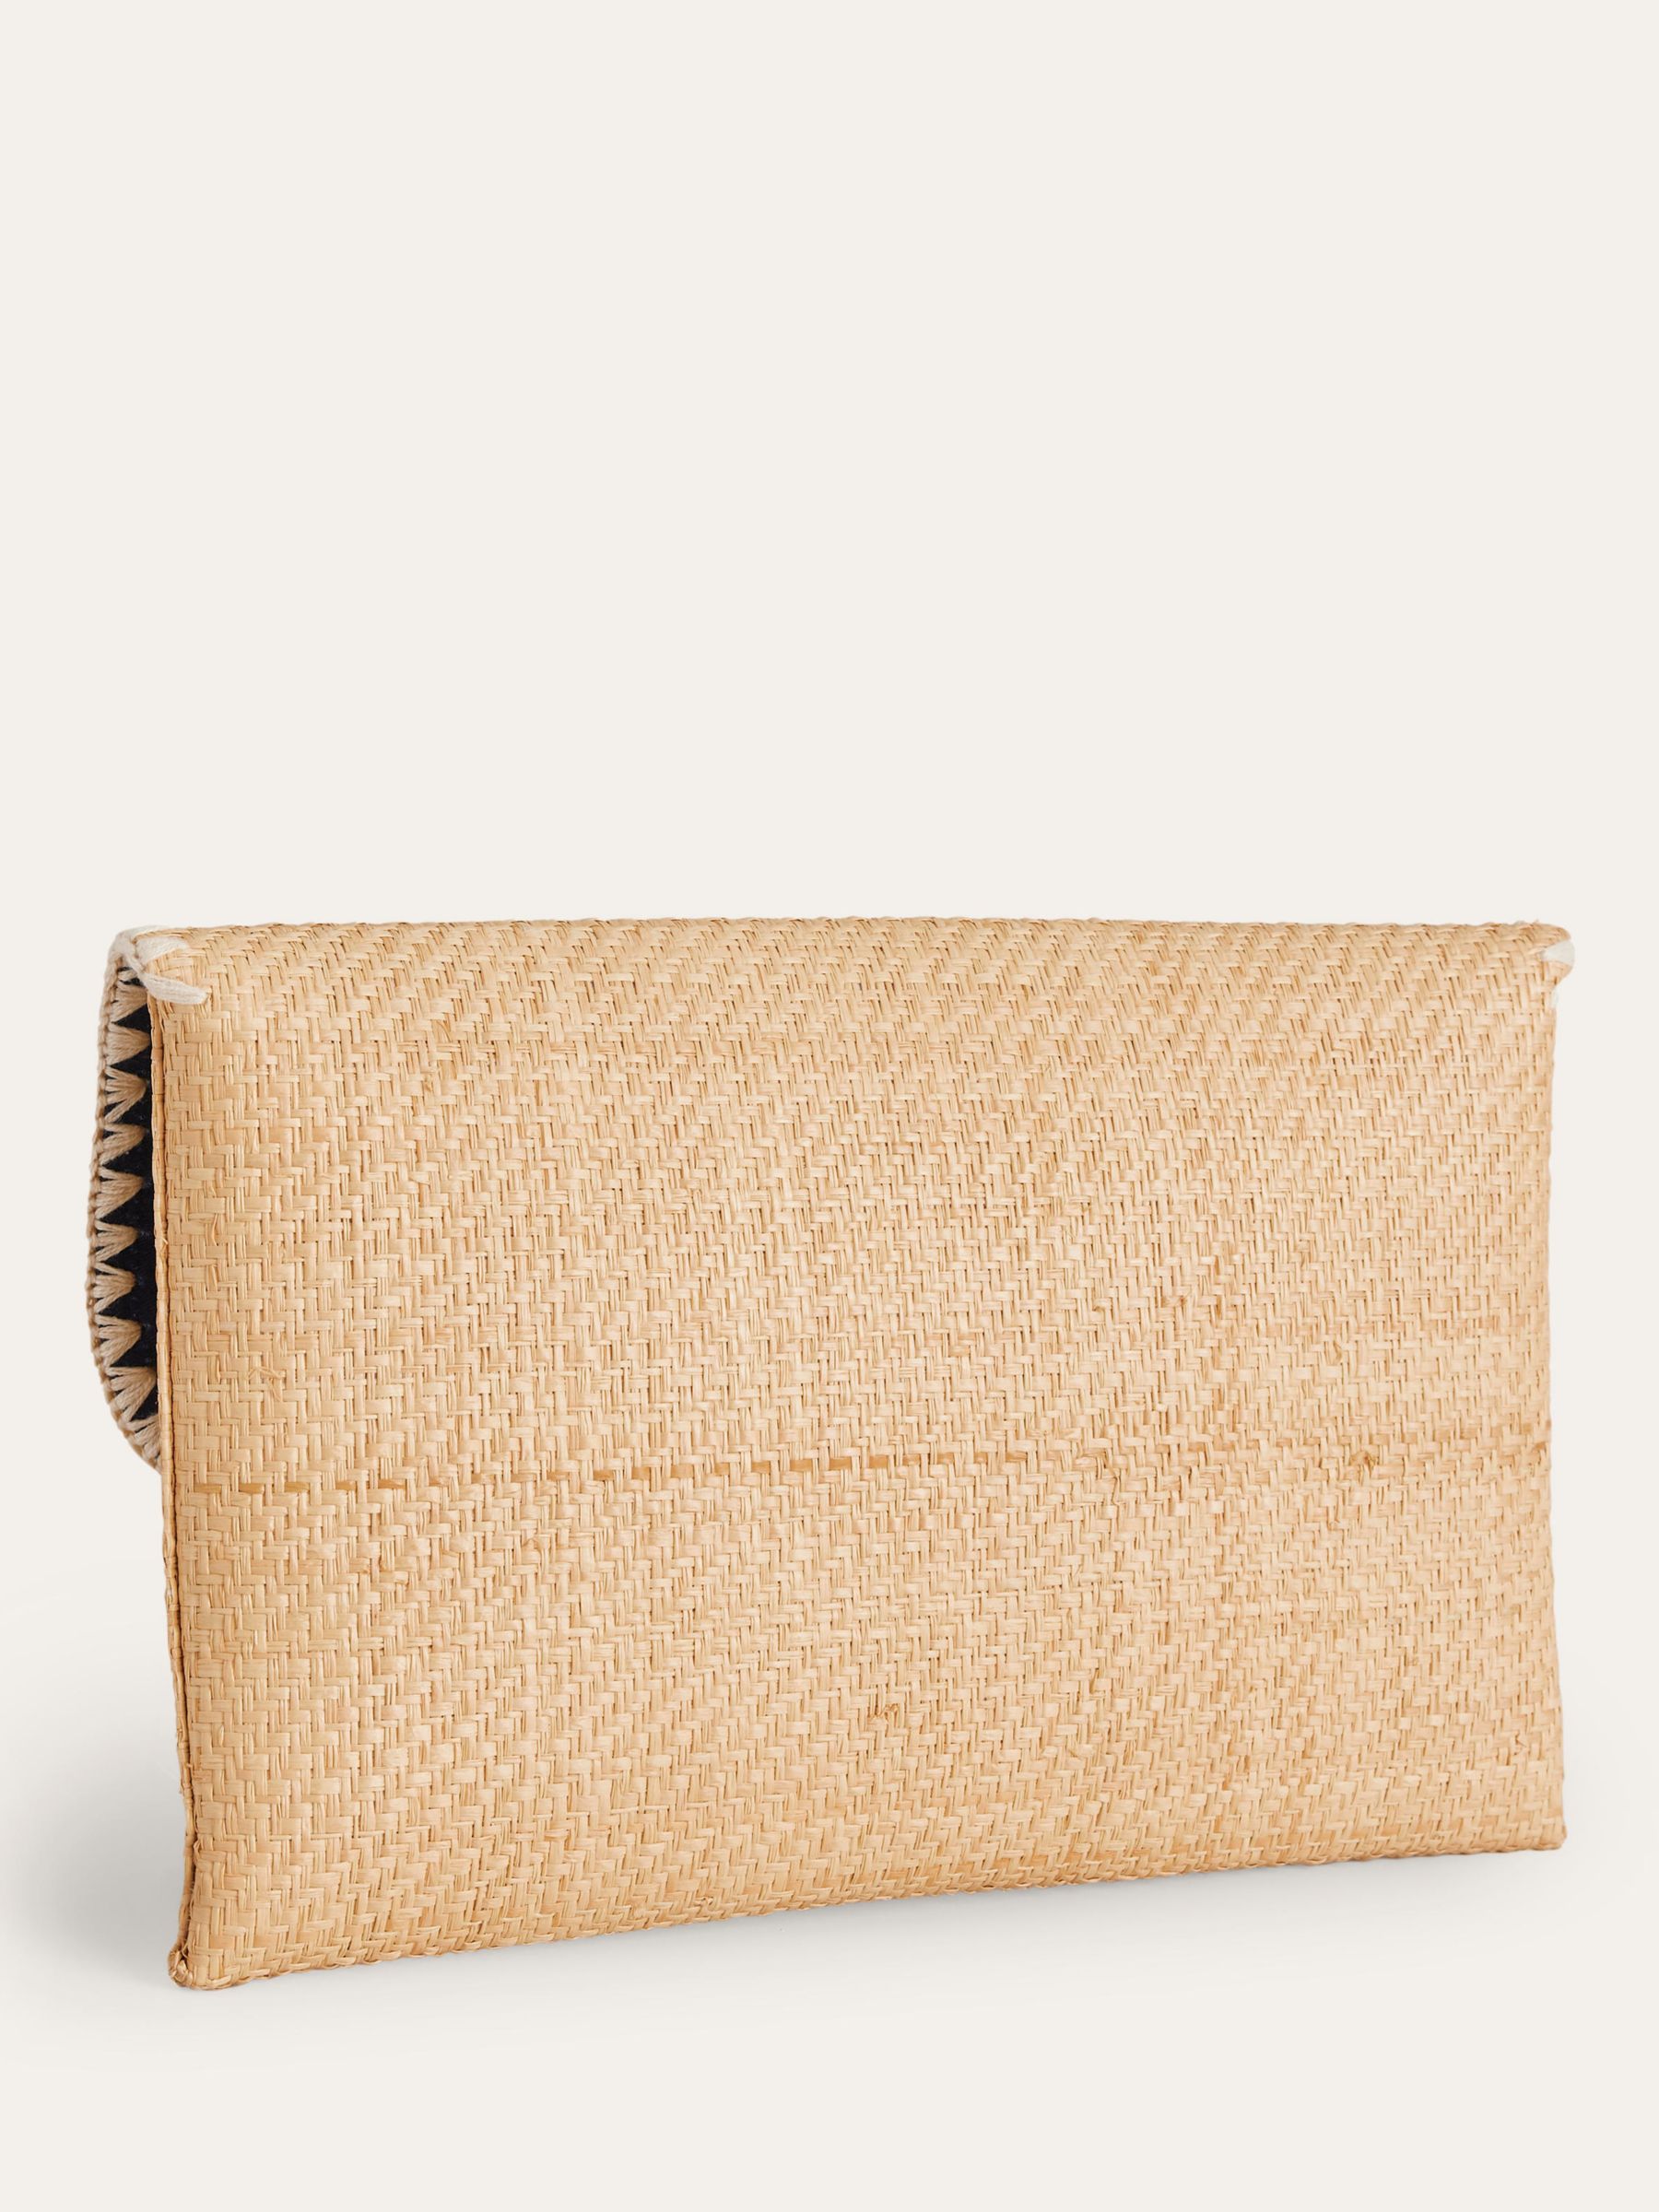 Boden Raffia Clutch Bag, Natural, One Size